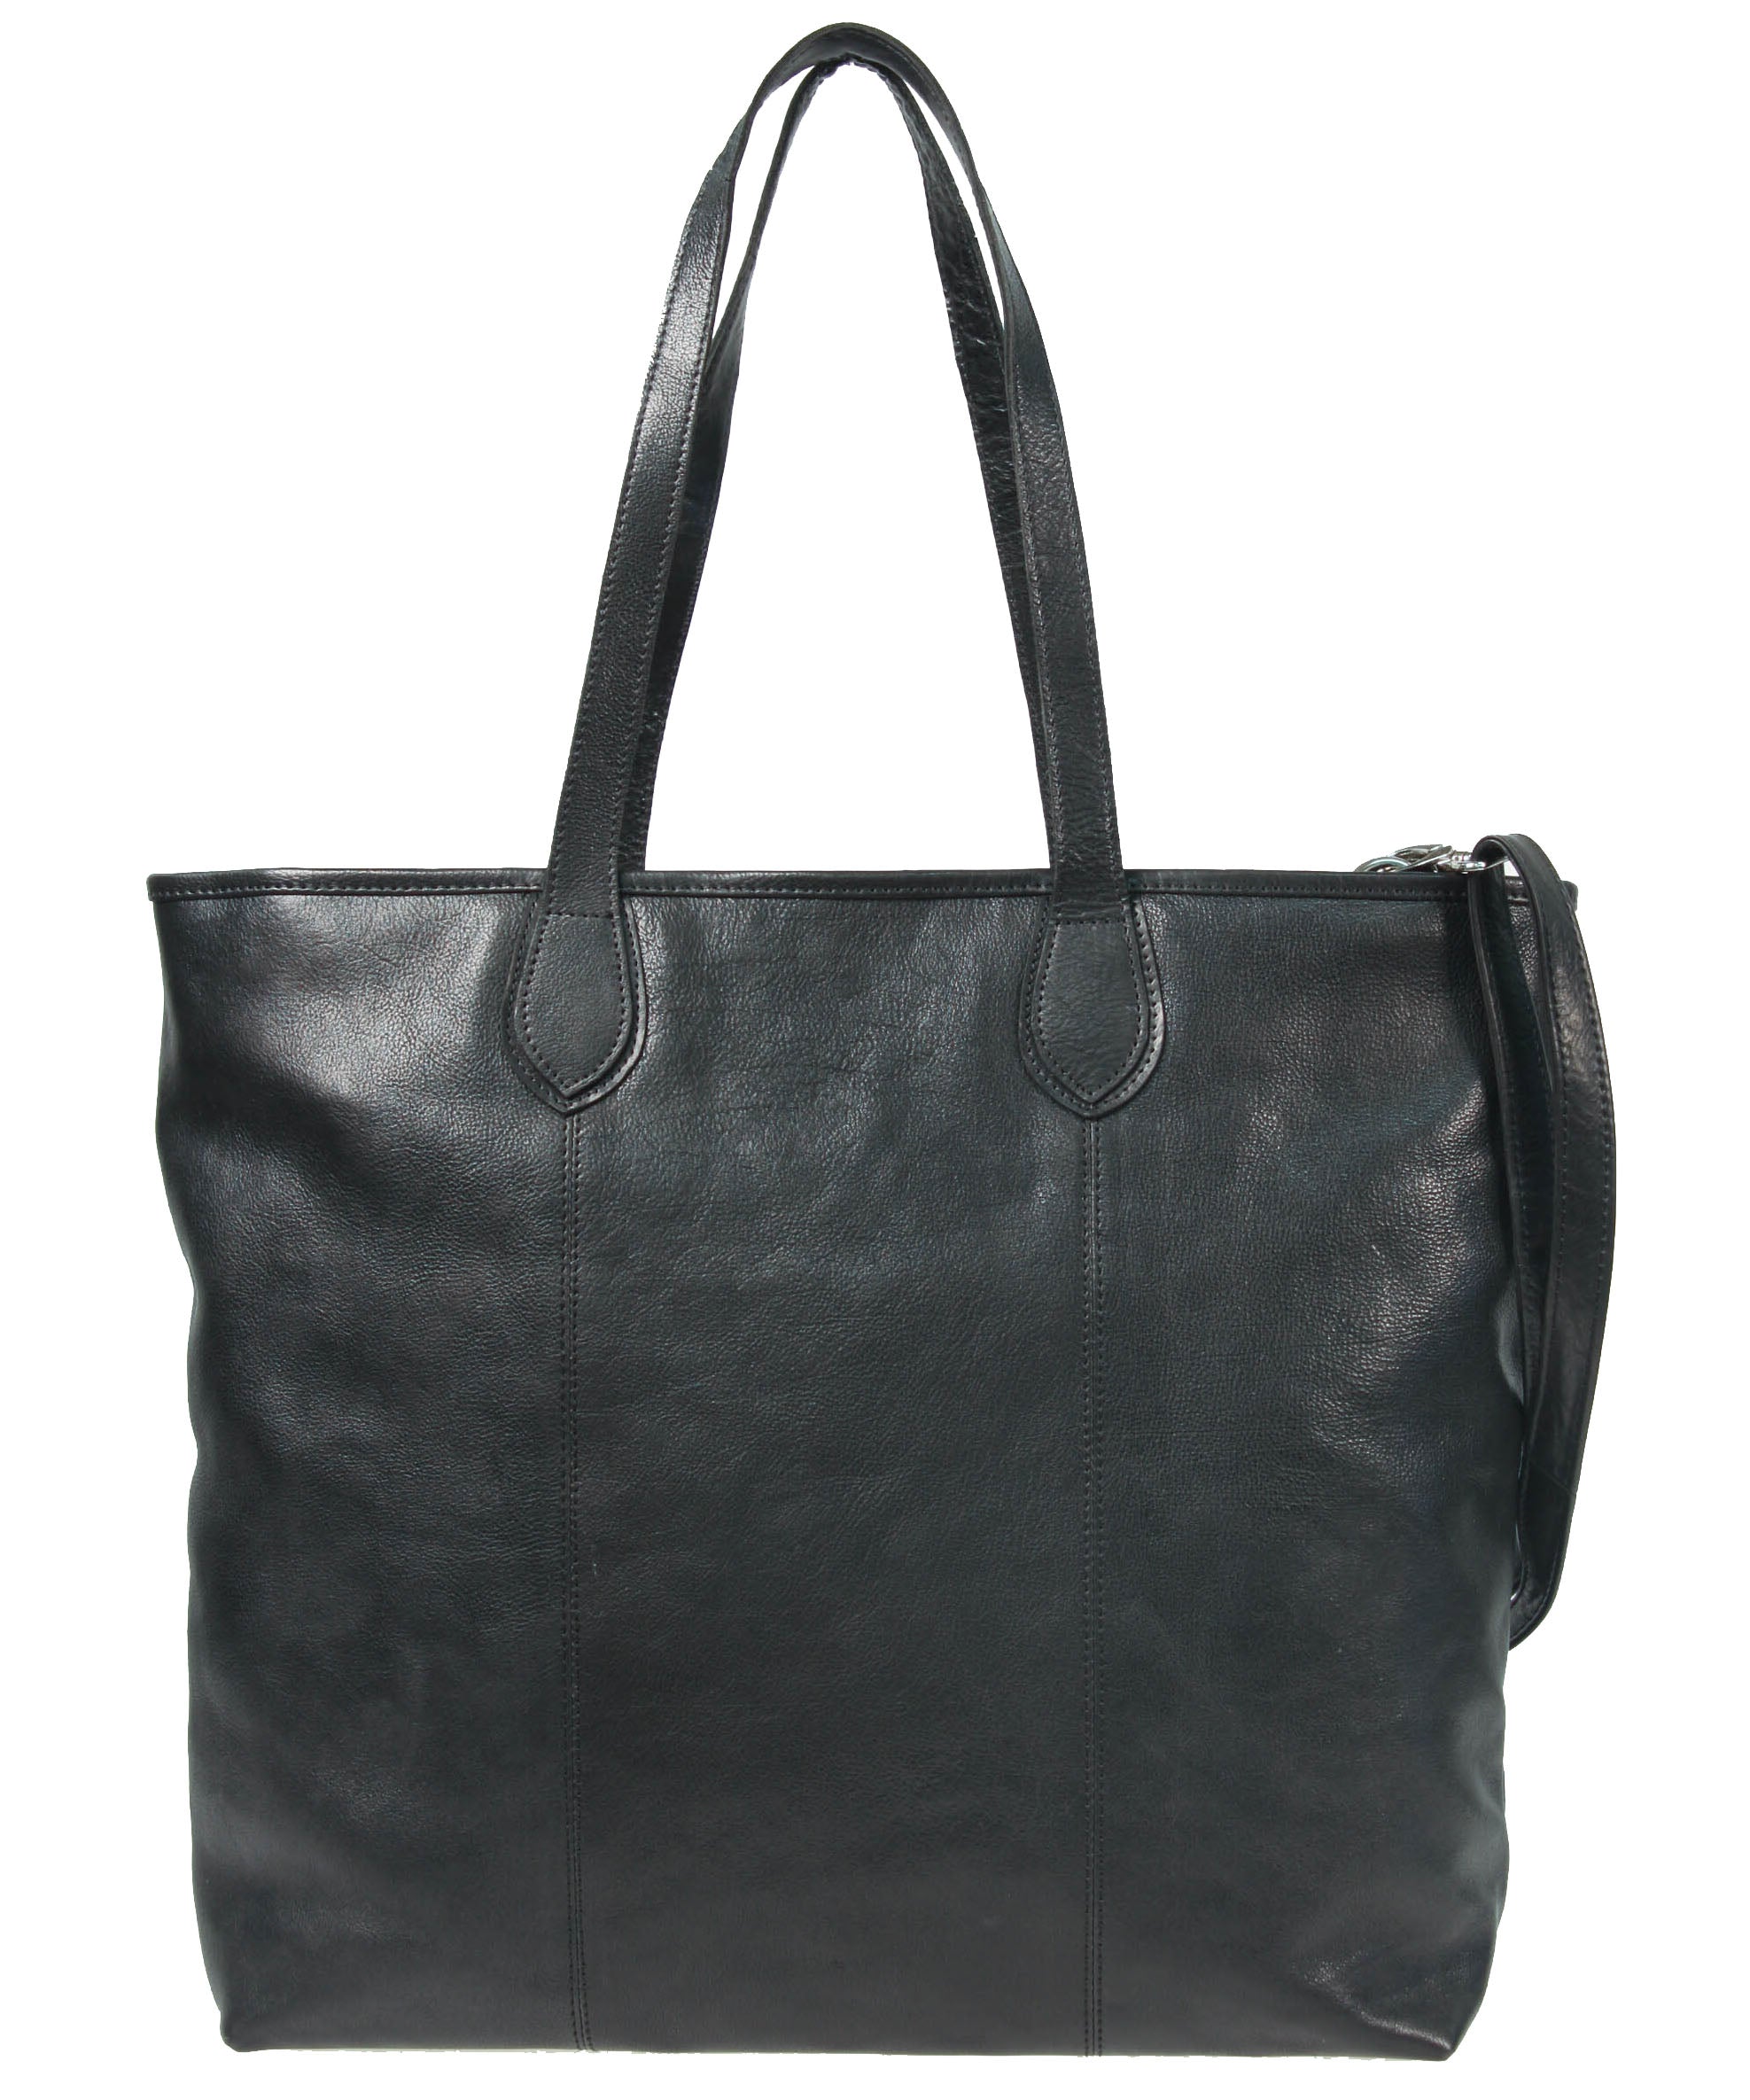 Tano Black Leather Shoulder Bag Gold Hardware | eBay